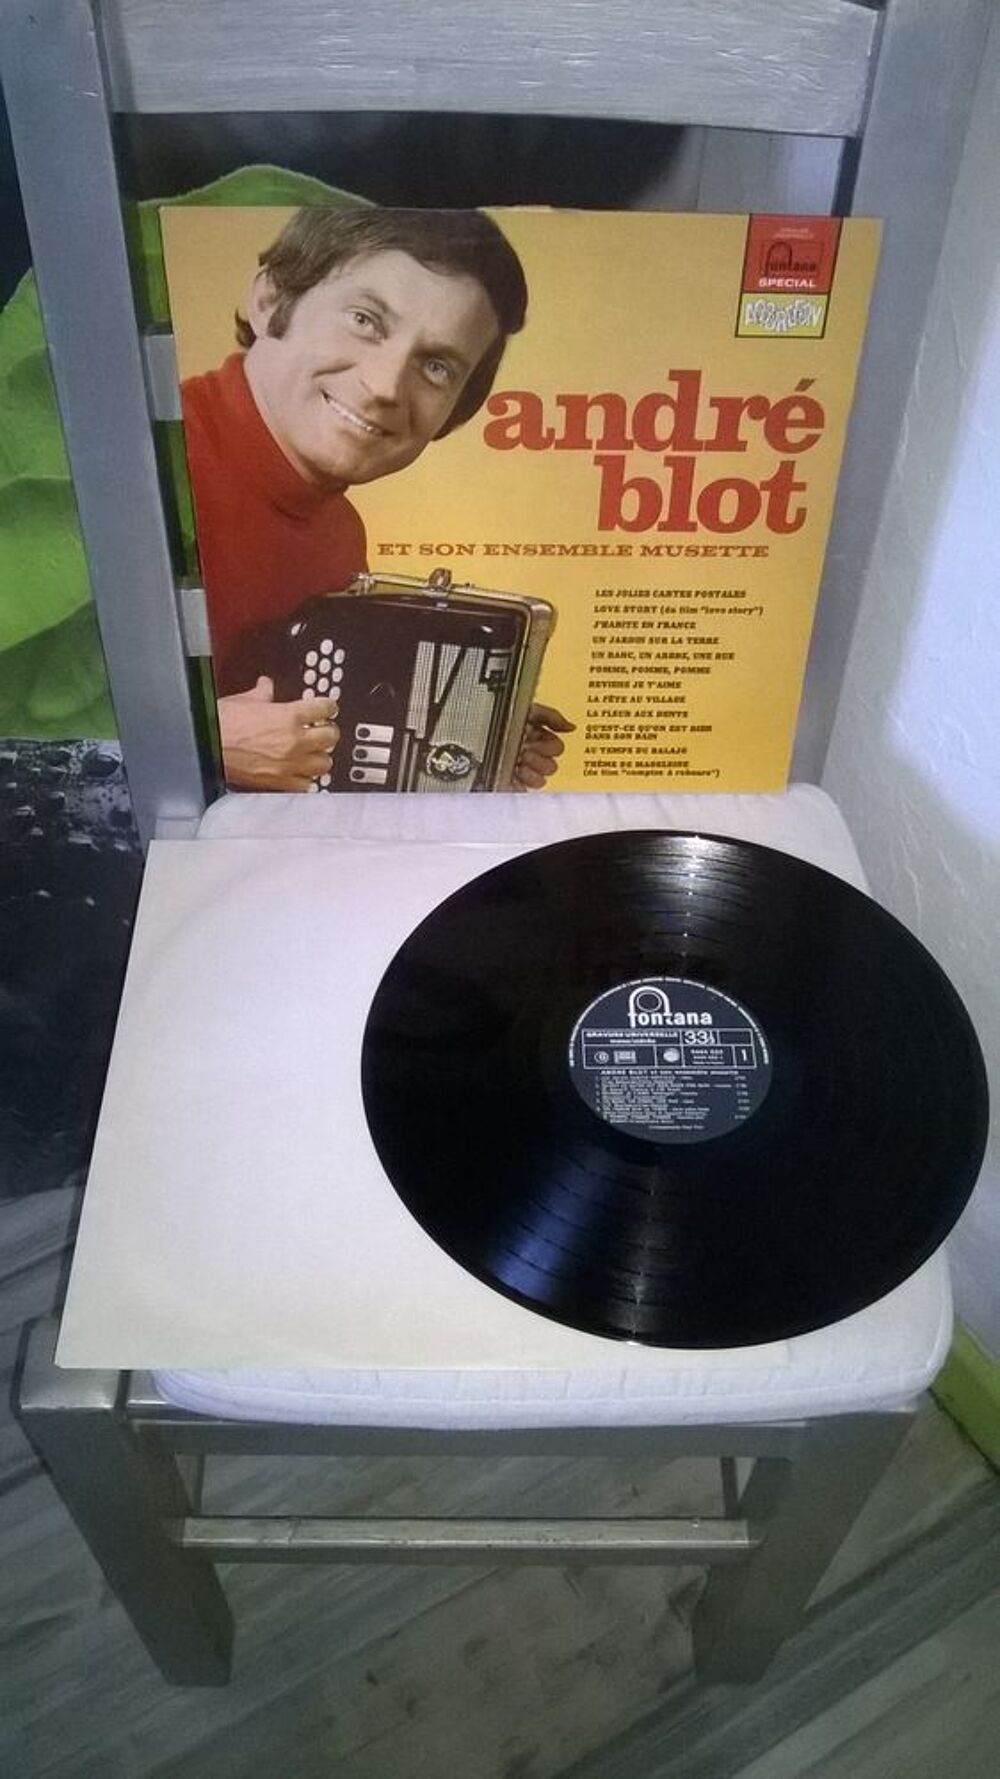 Vinyle Andre Blot
Et son ensemble musette
1971
Excellent CD et vinyles